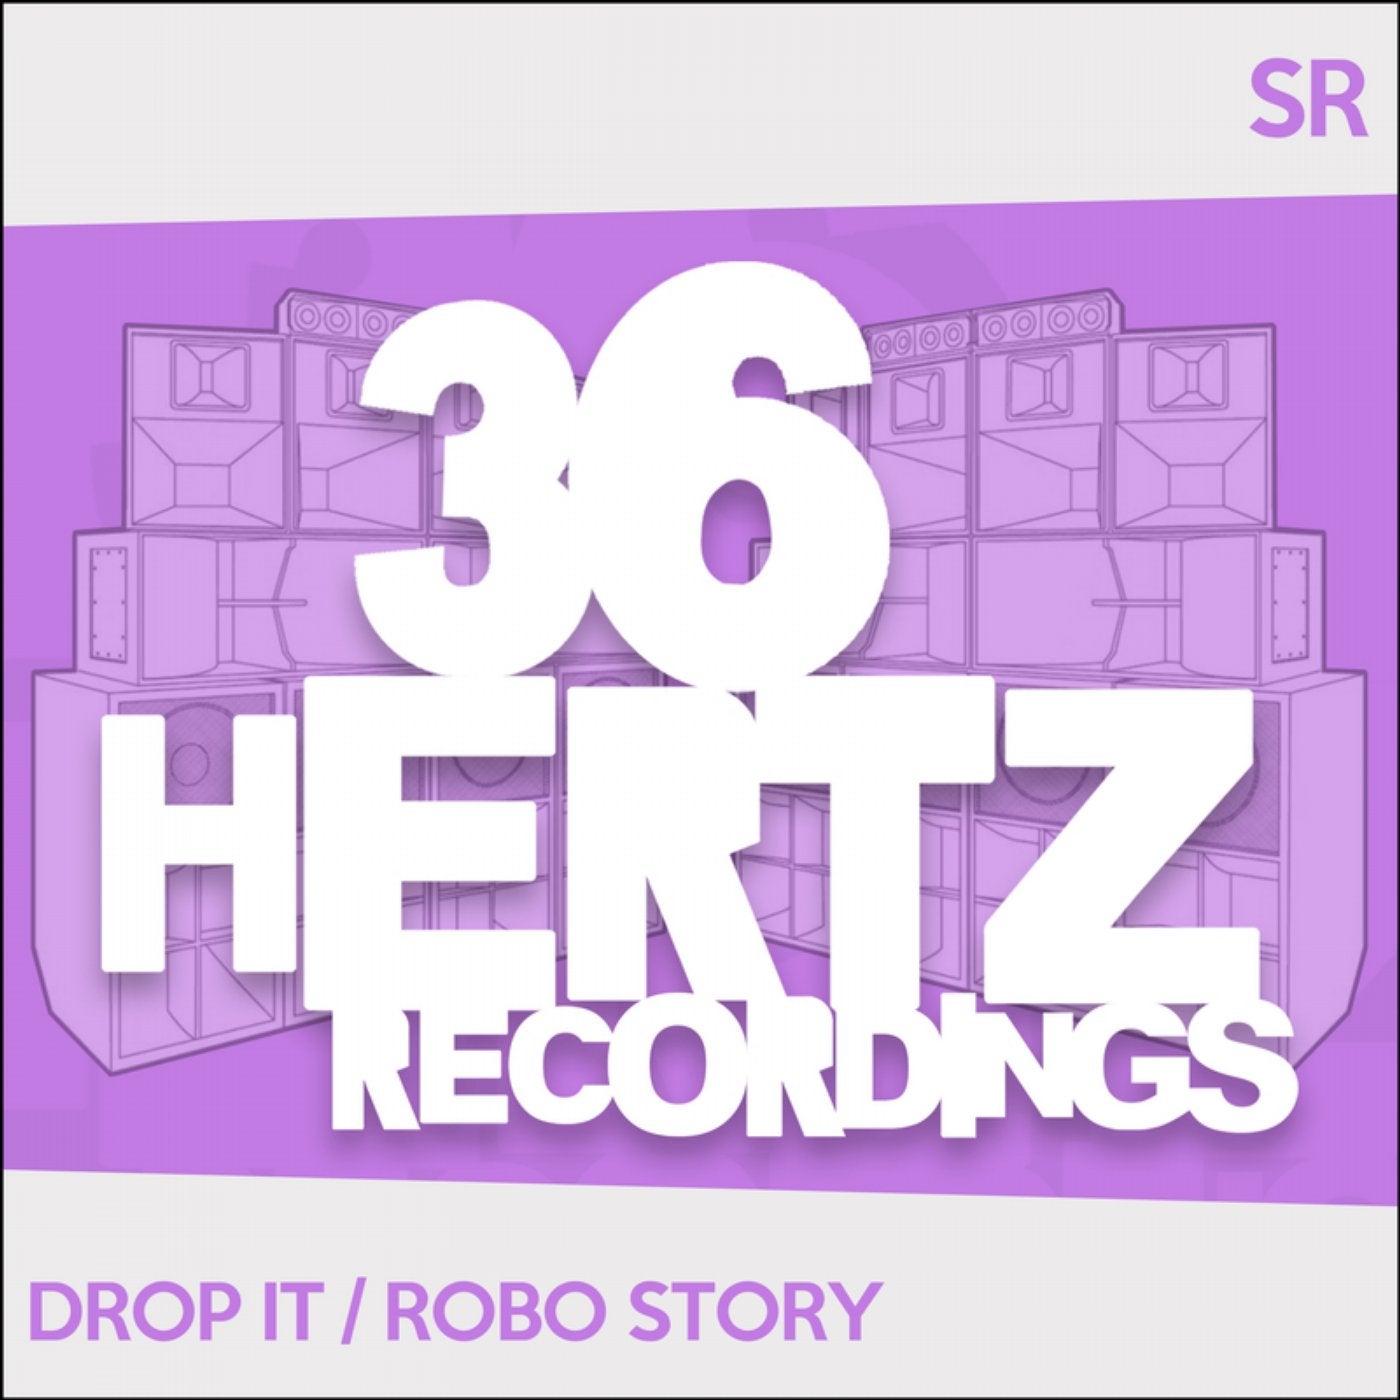 Drop It / Robo Story